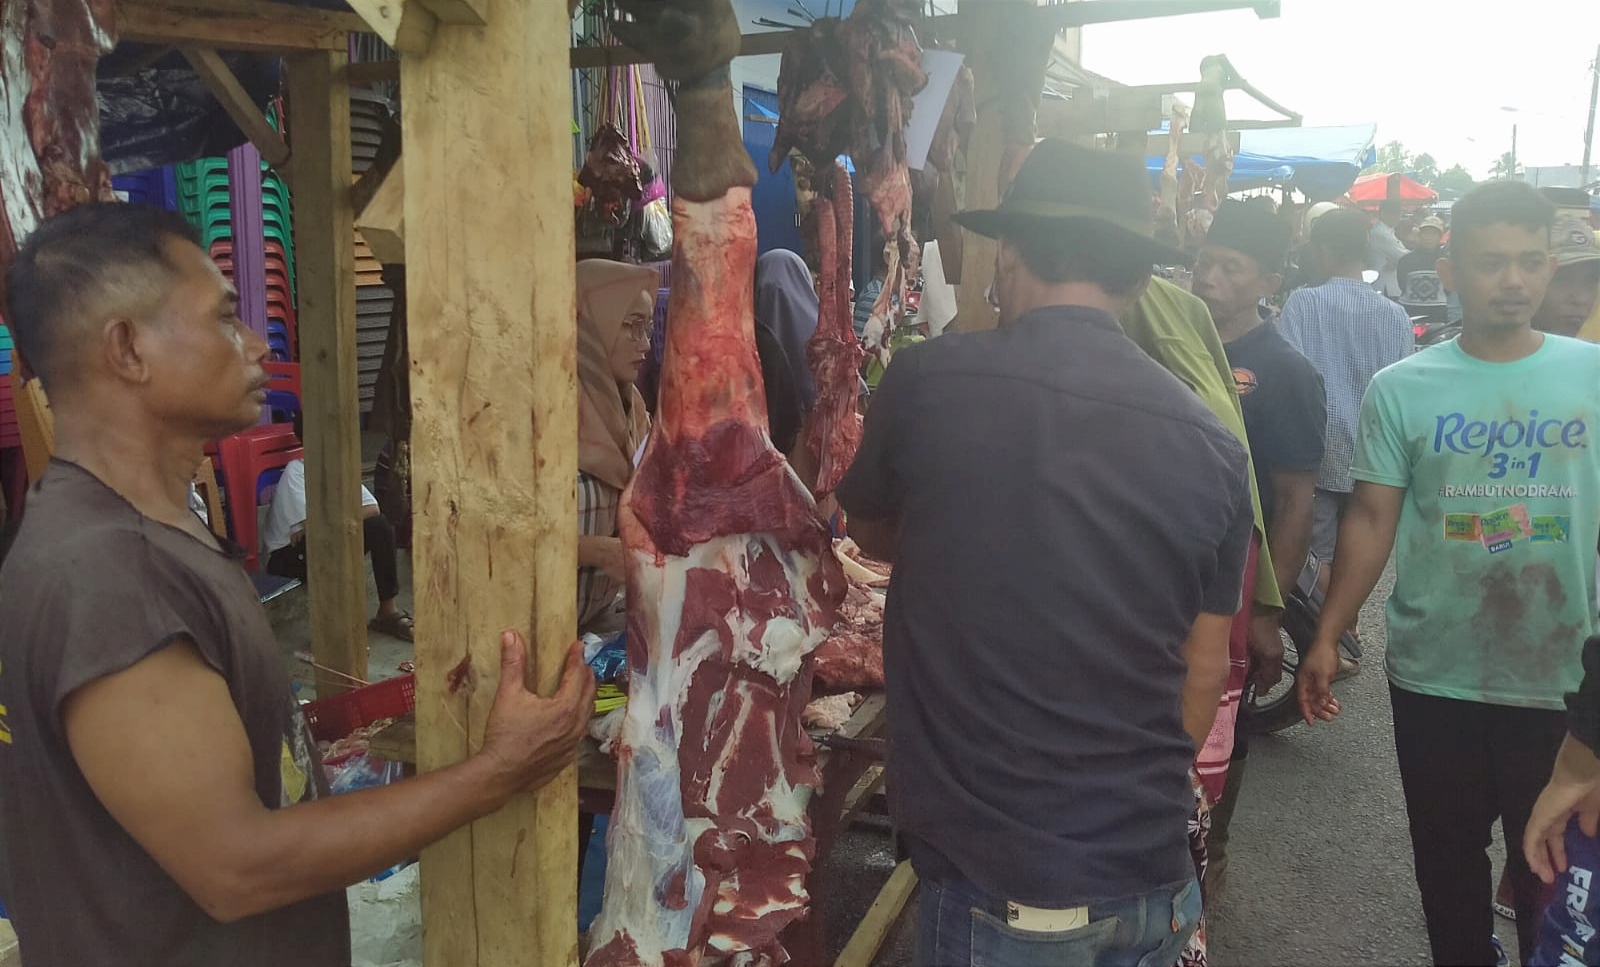 Harga Naik, Daging Sapi di Pasar Kota Agung Rp 170 Ribu per Kilogram